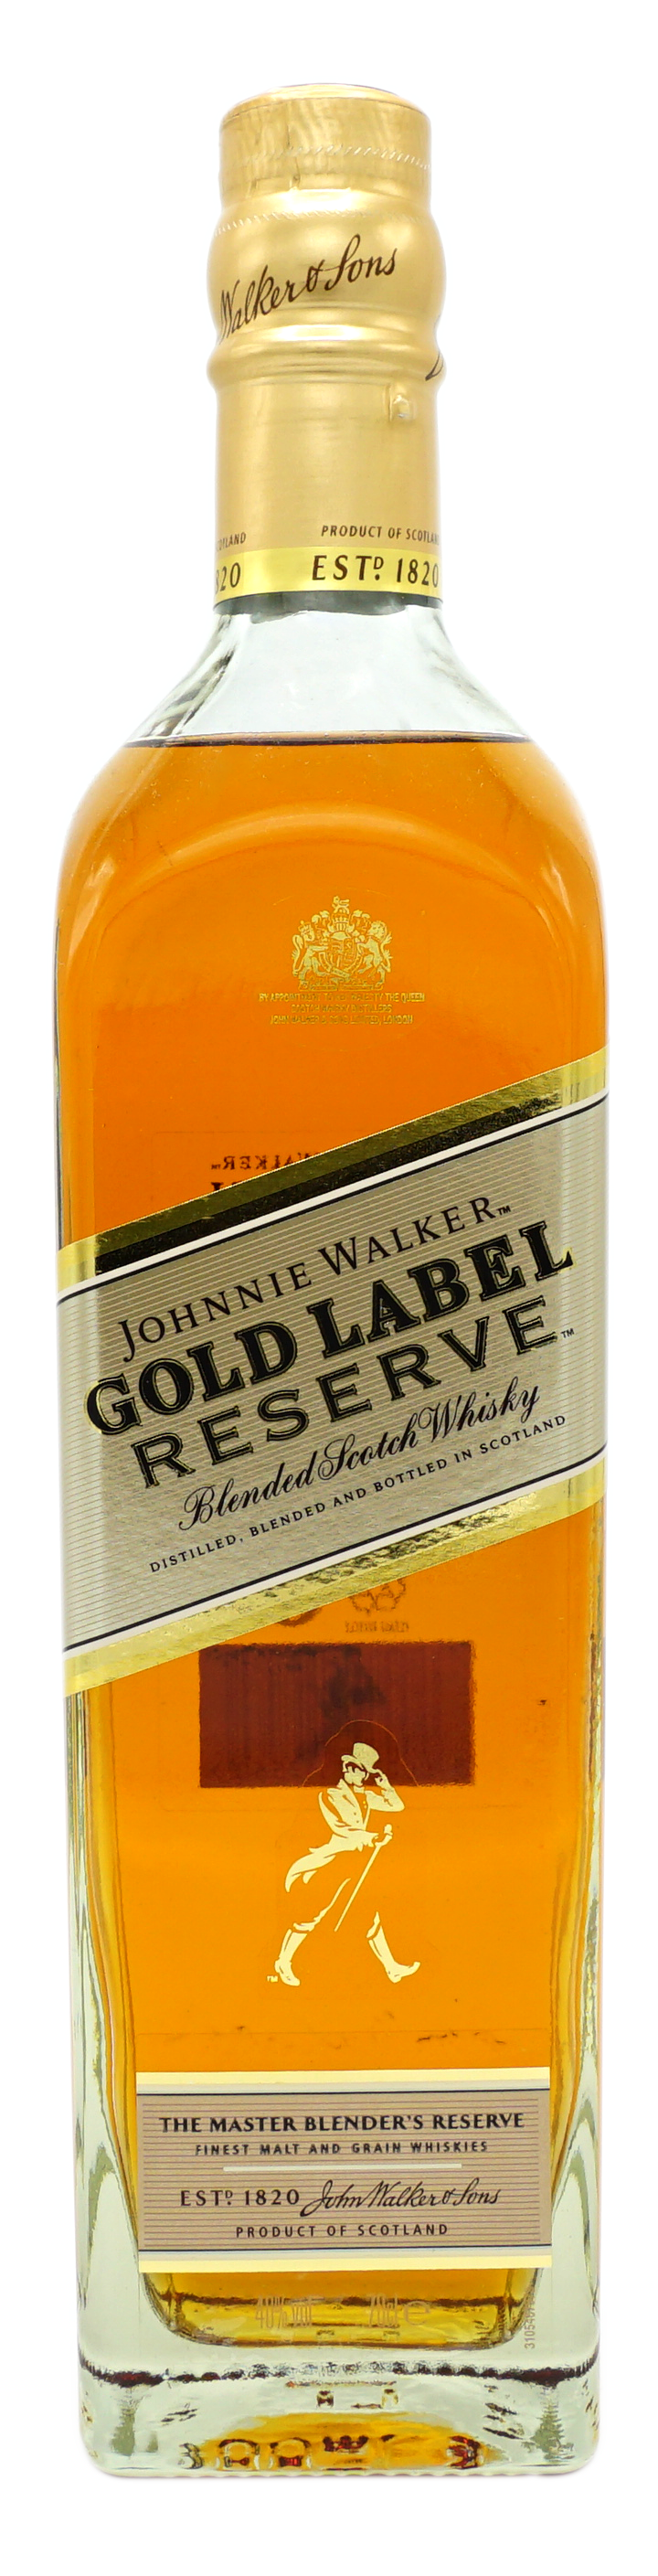 JohnnieWalker GoldLabel 40% Fles